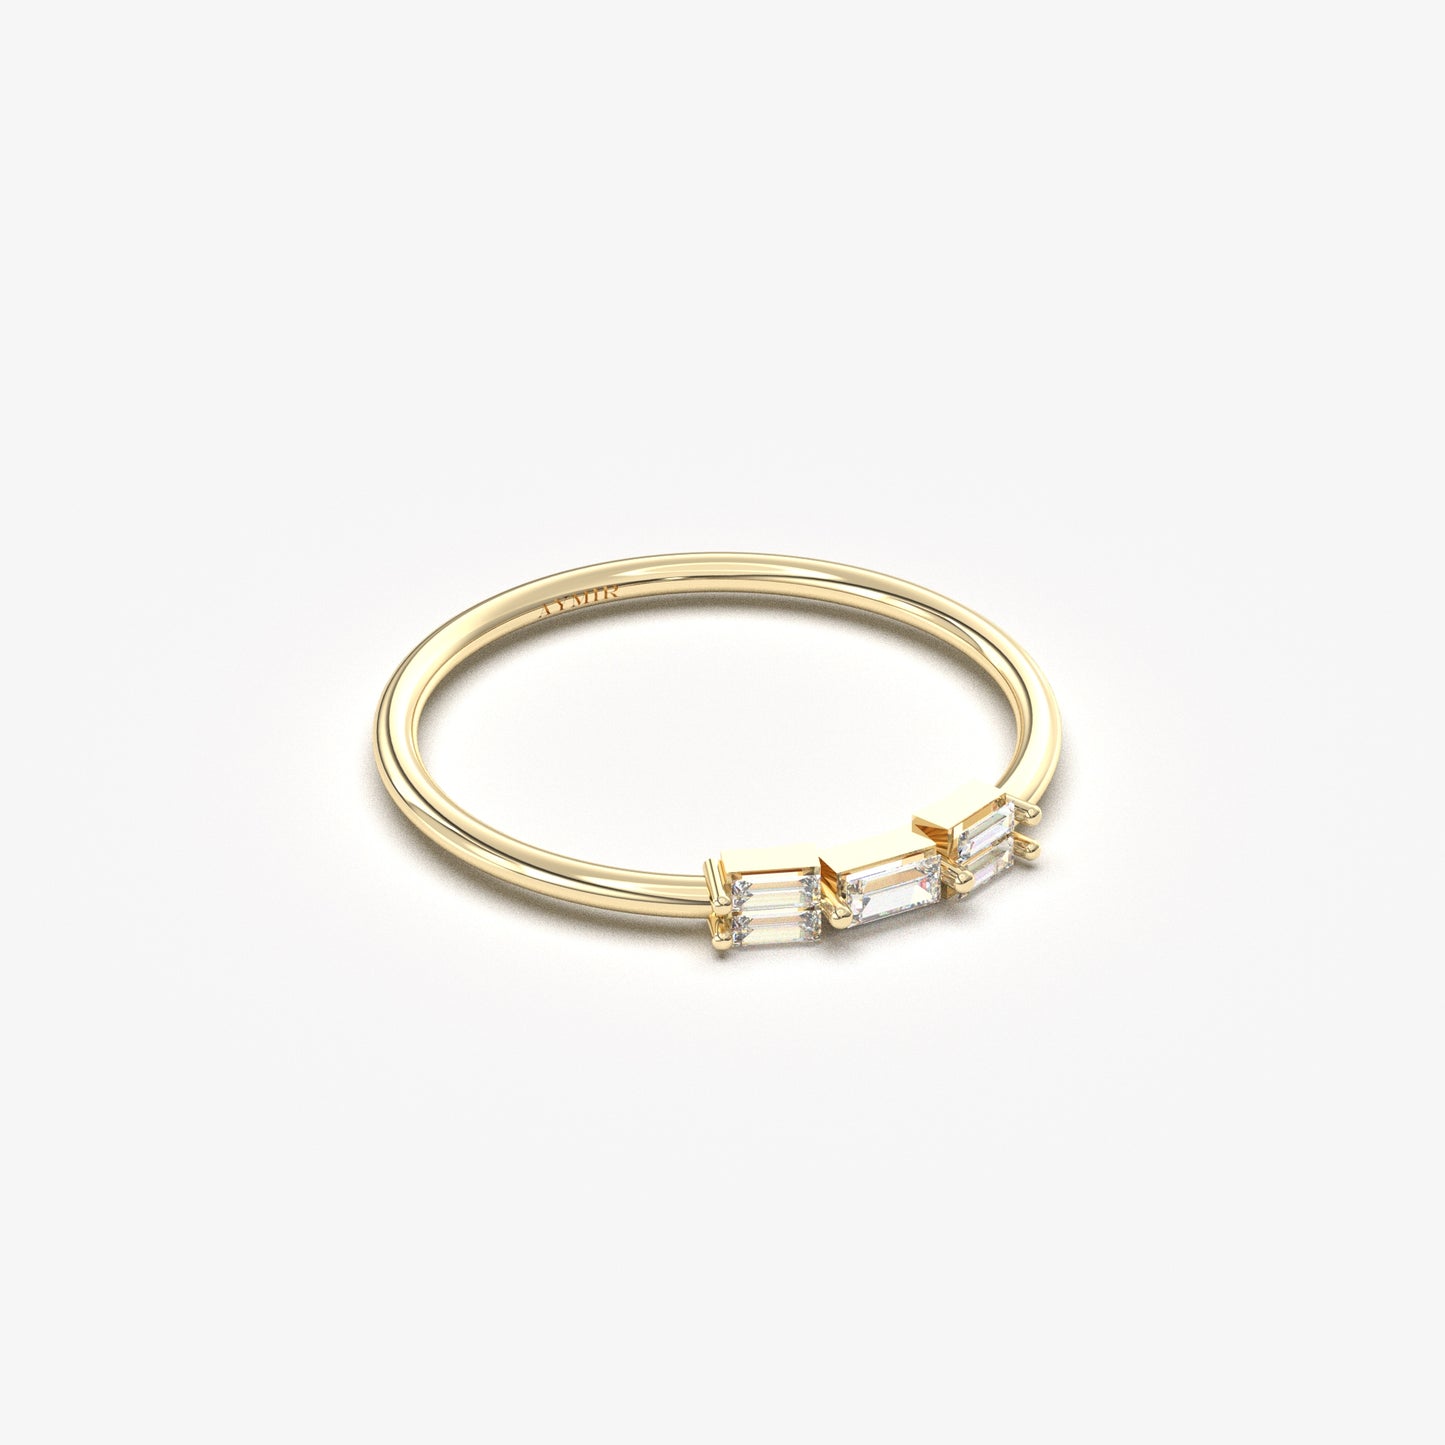 10K Gold Elegant Baguette Diamond Ring - 2S161